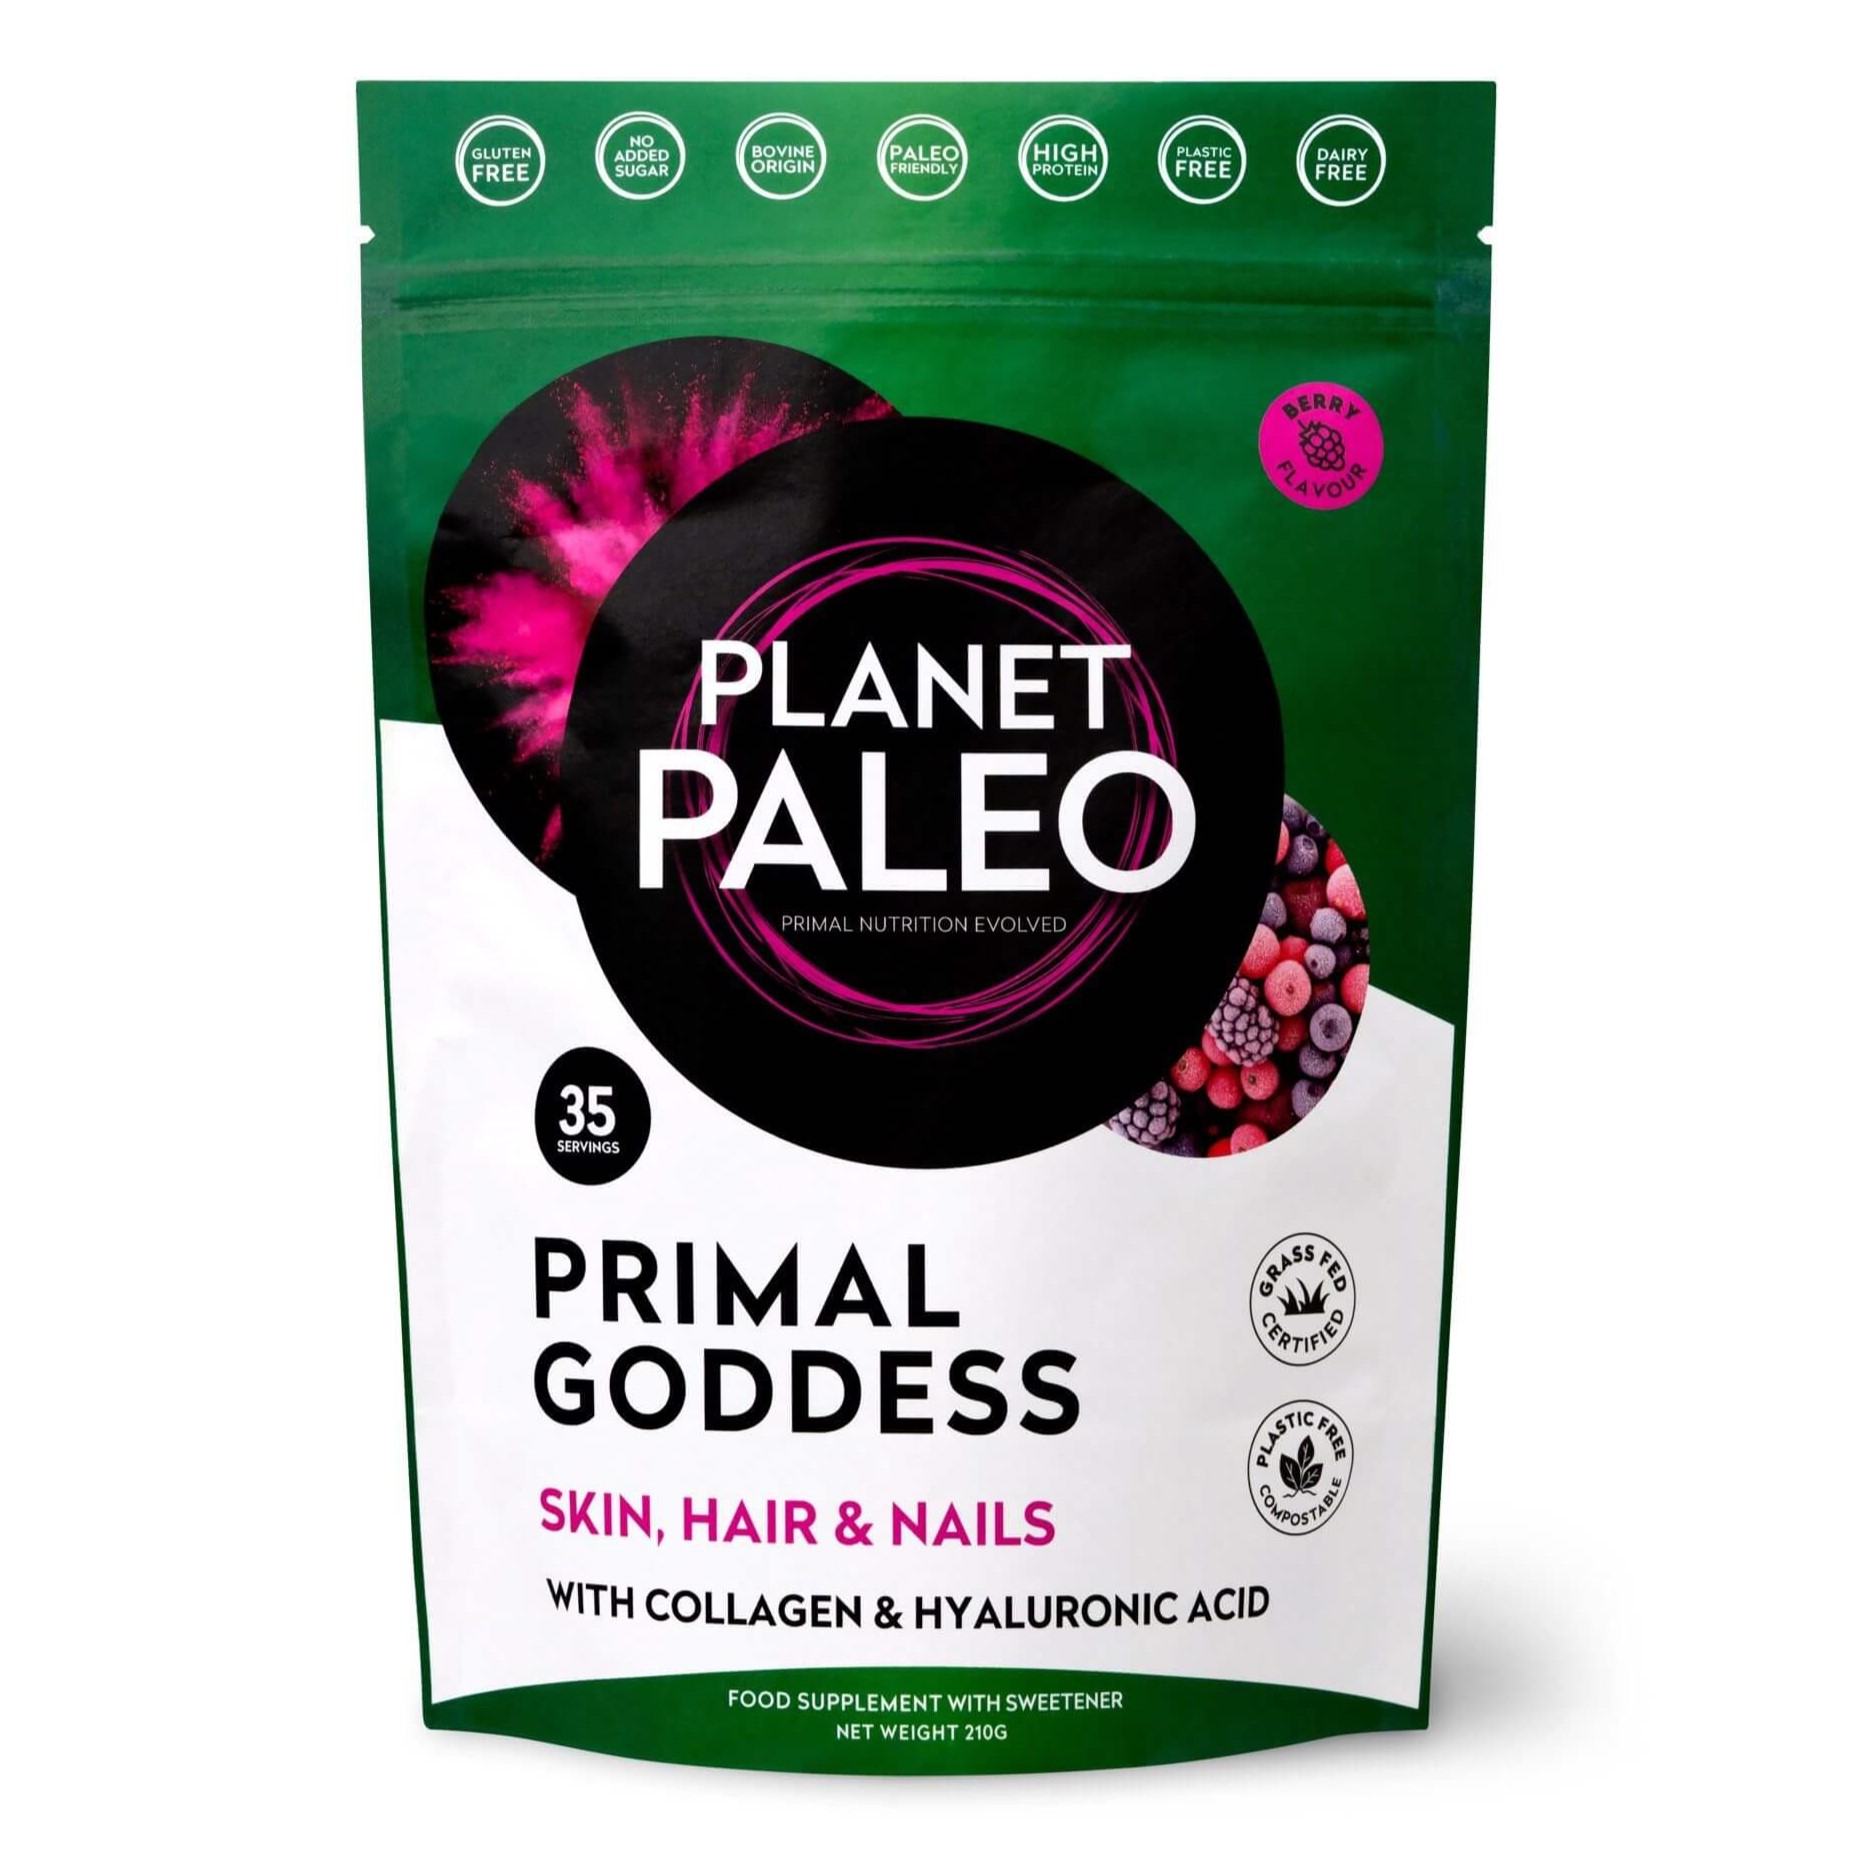 Planet Paleo | Hydrolyzovaný hovězí kolagen - Primal Goddess - 6g, 60g, 210g Obsah: 210 g